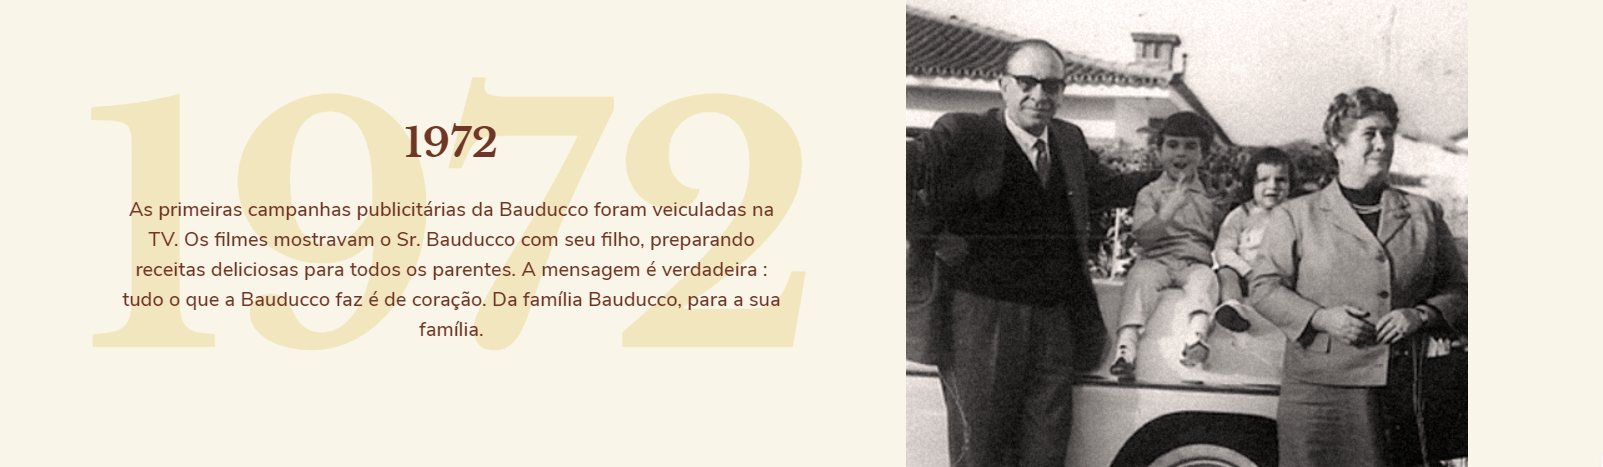 1972: As primeiras campanhas publicitárias da Bauducco foram veiculadas na TV. Os filmes mostravam o Sr. Bauducco com seu filho, preparando receitas deliciosas para todos os parentes. A mensagem é verdadeira: tudo que a Bauducco faz é de coração. Da família Bauducco, para a sua família.